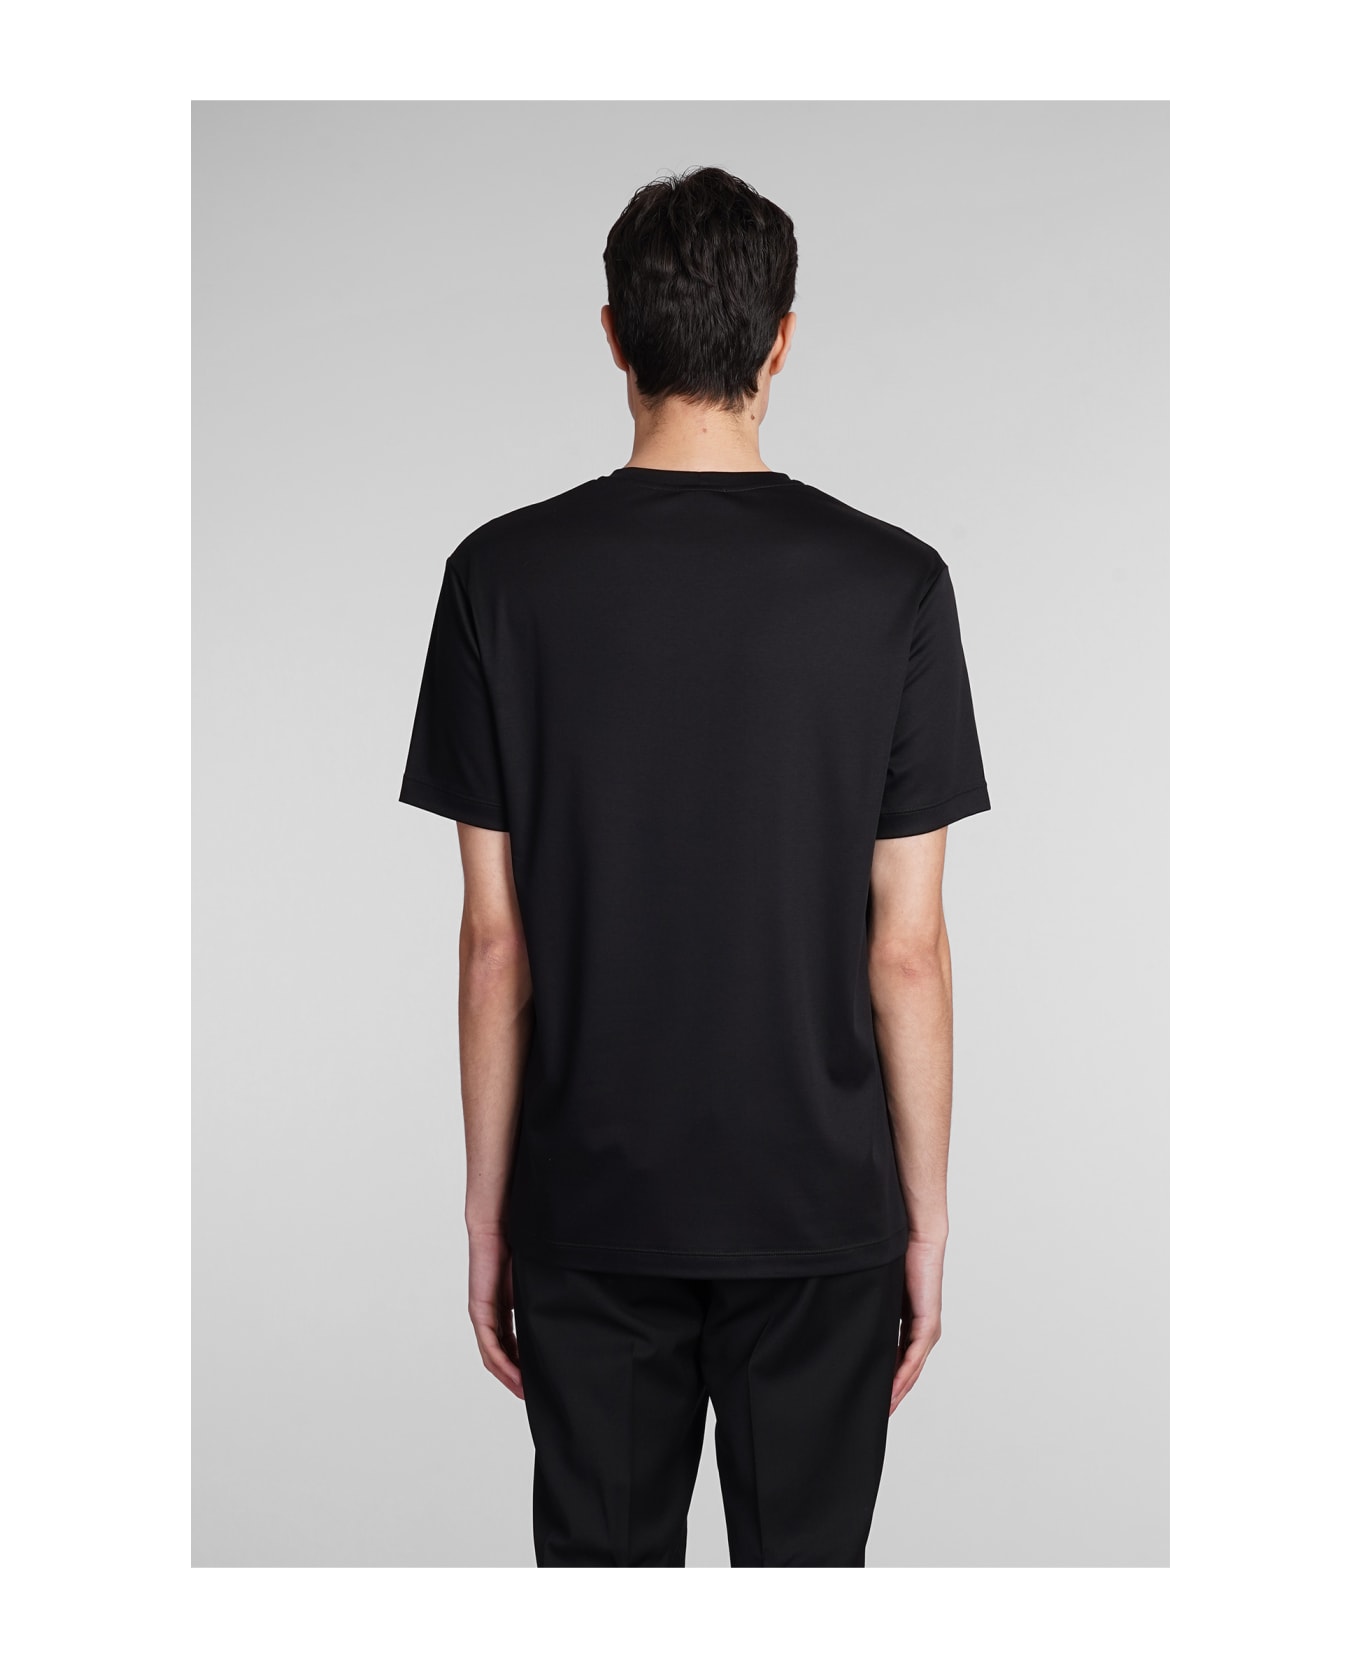 Giorgio Armani T-shirt In Black Cotton - black シャツ